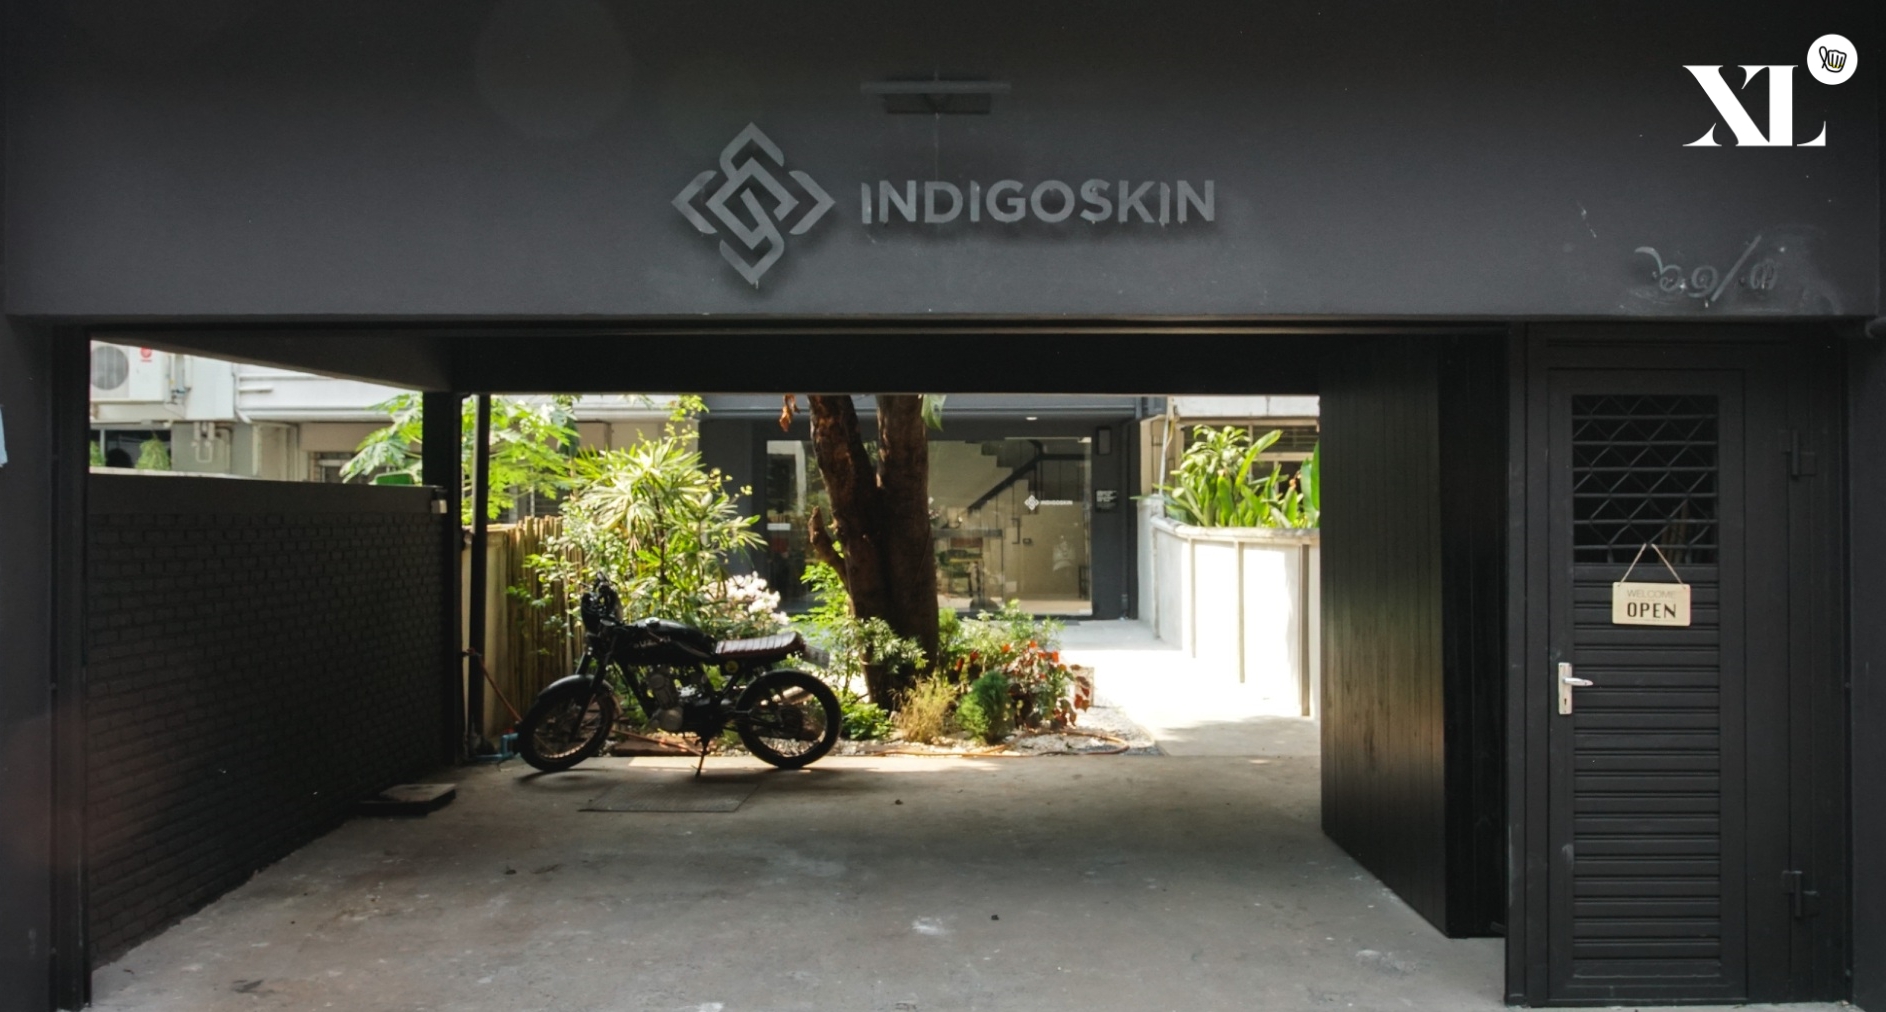 Indigoskin Cafe คาเฟ่จากแบรนด์เดนิมสัญชาติไทย